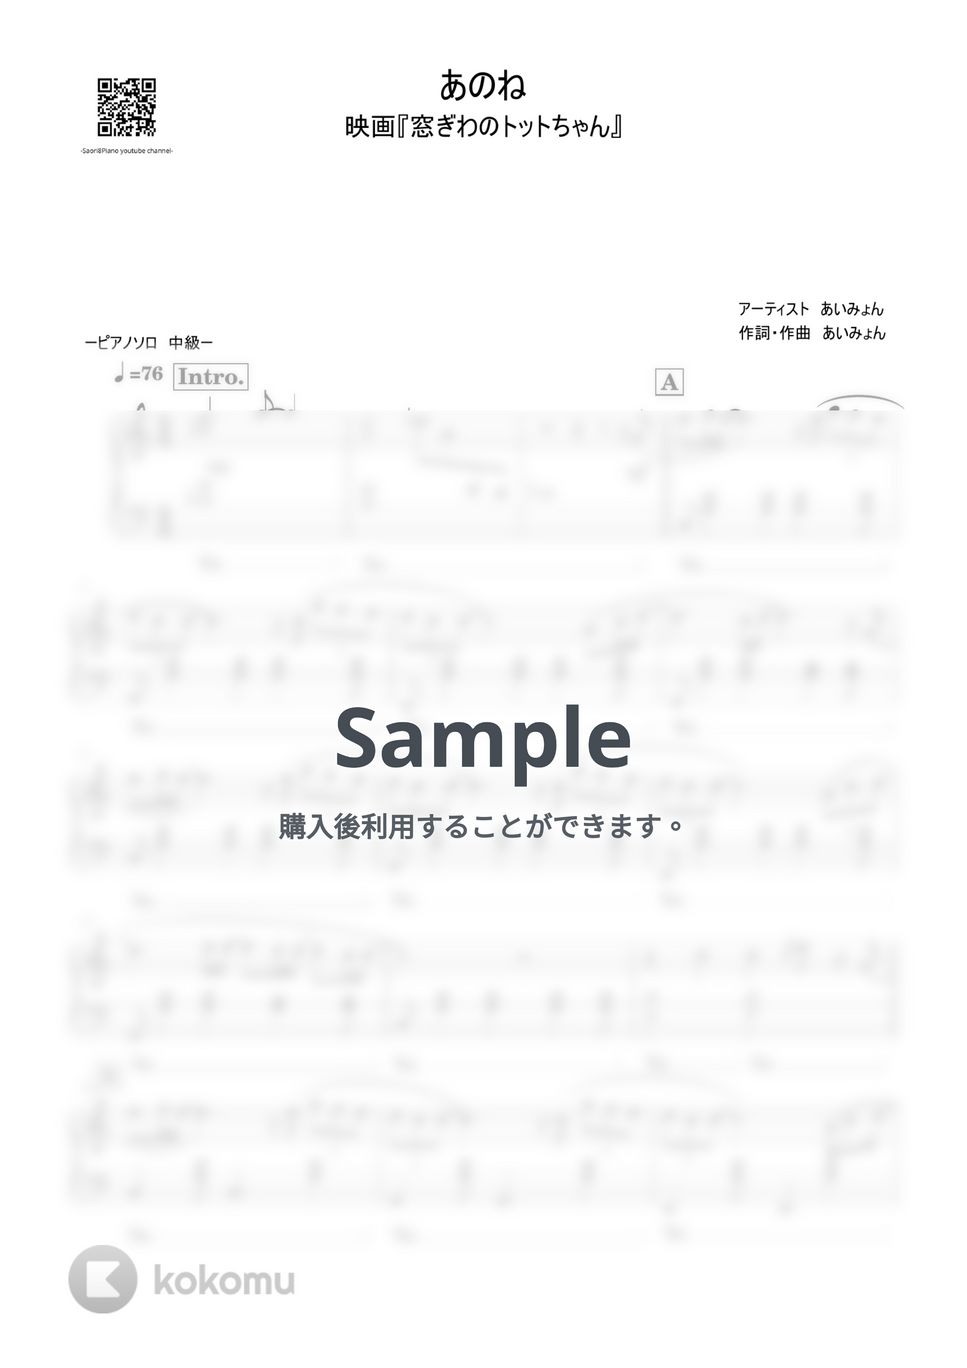 あいみょん - あのね (窓ぎわのトットちゃん/中級レベル) by Saori8Piano